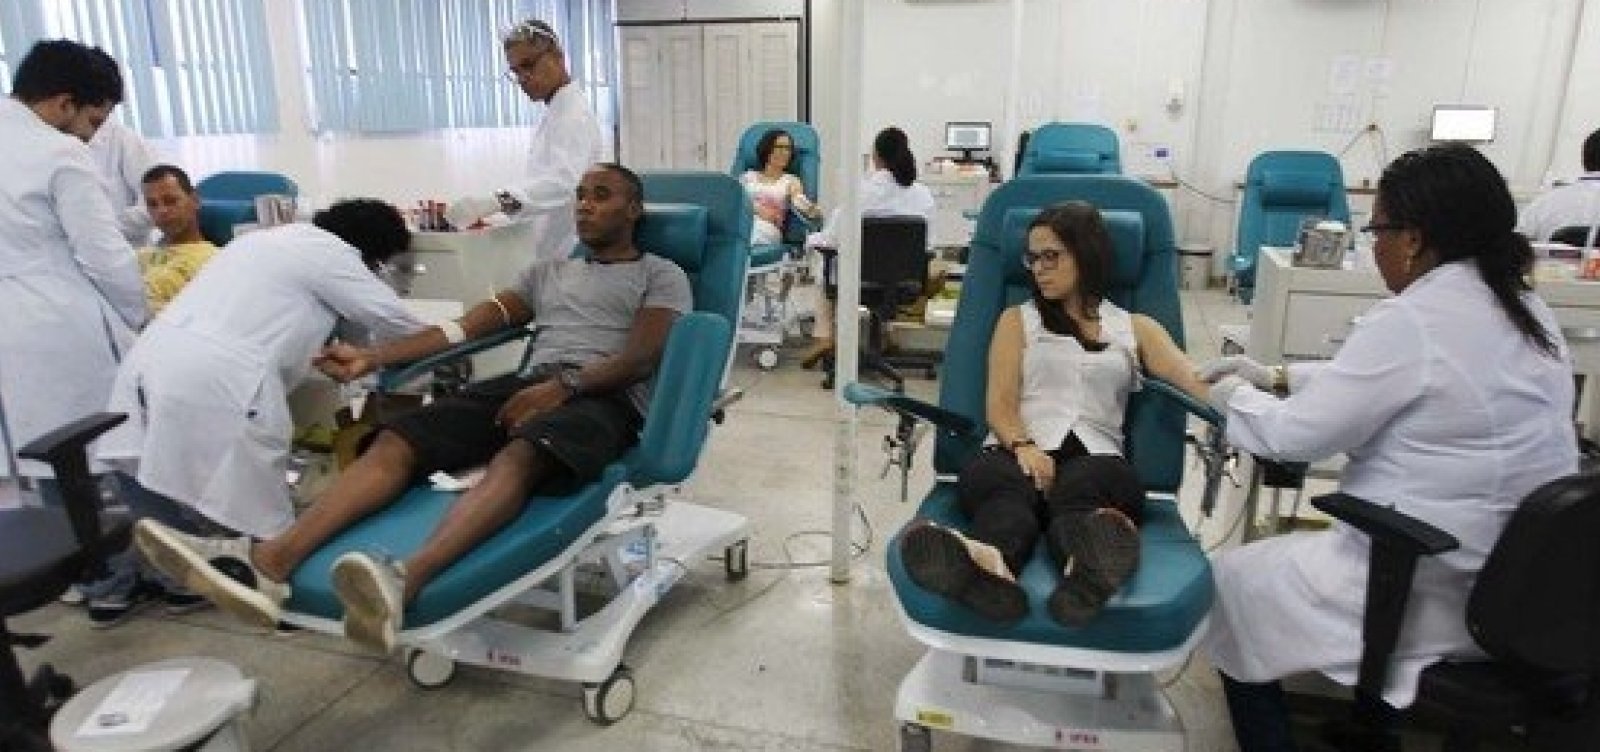 Hemoba realiza campanha para reforçar estoques de sangue